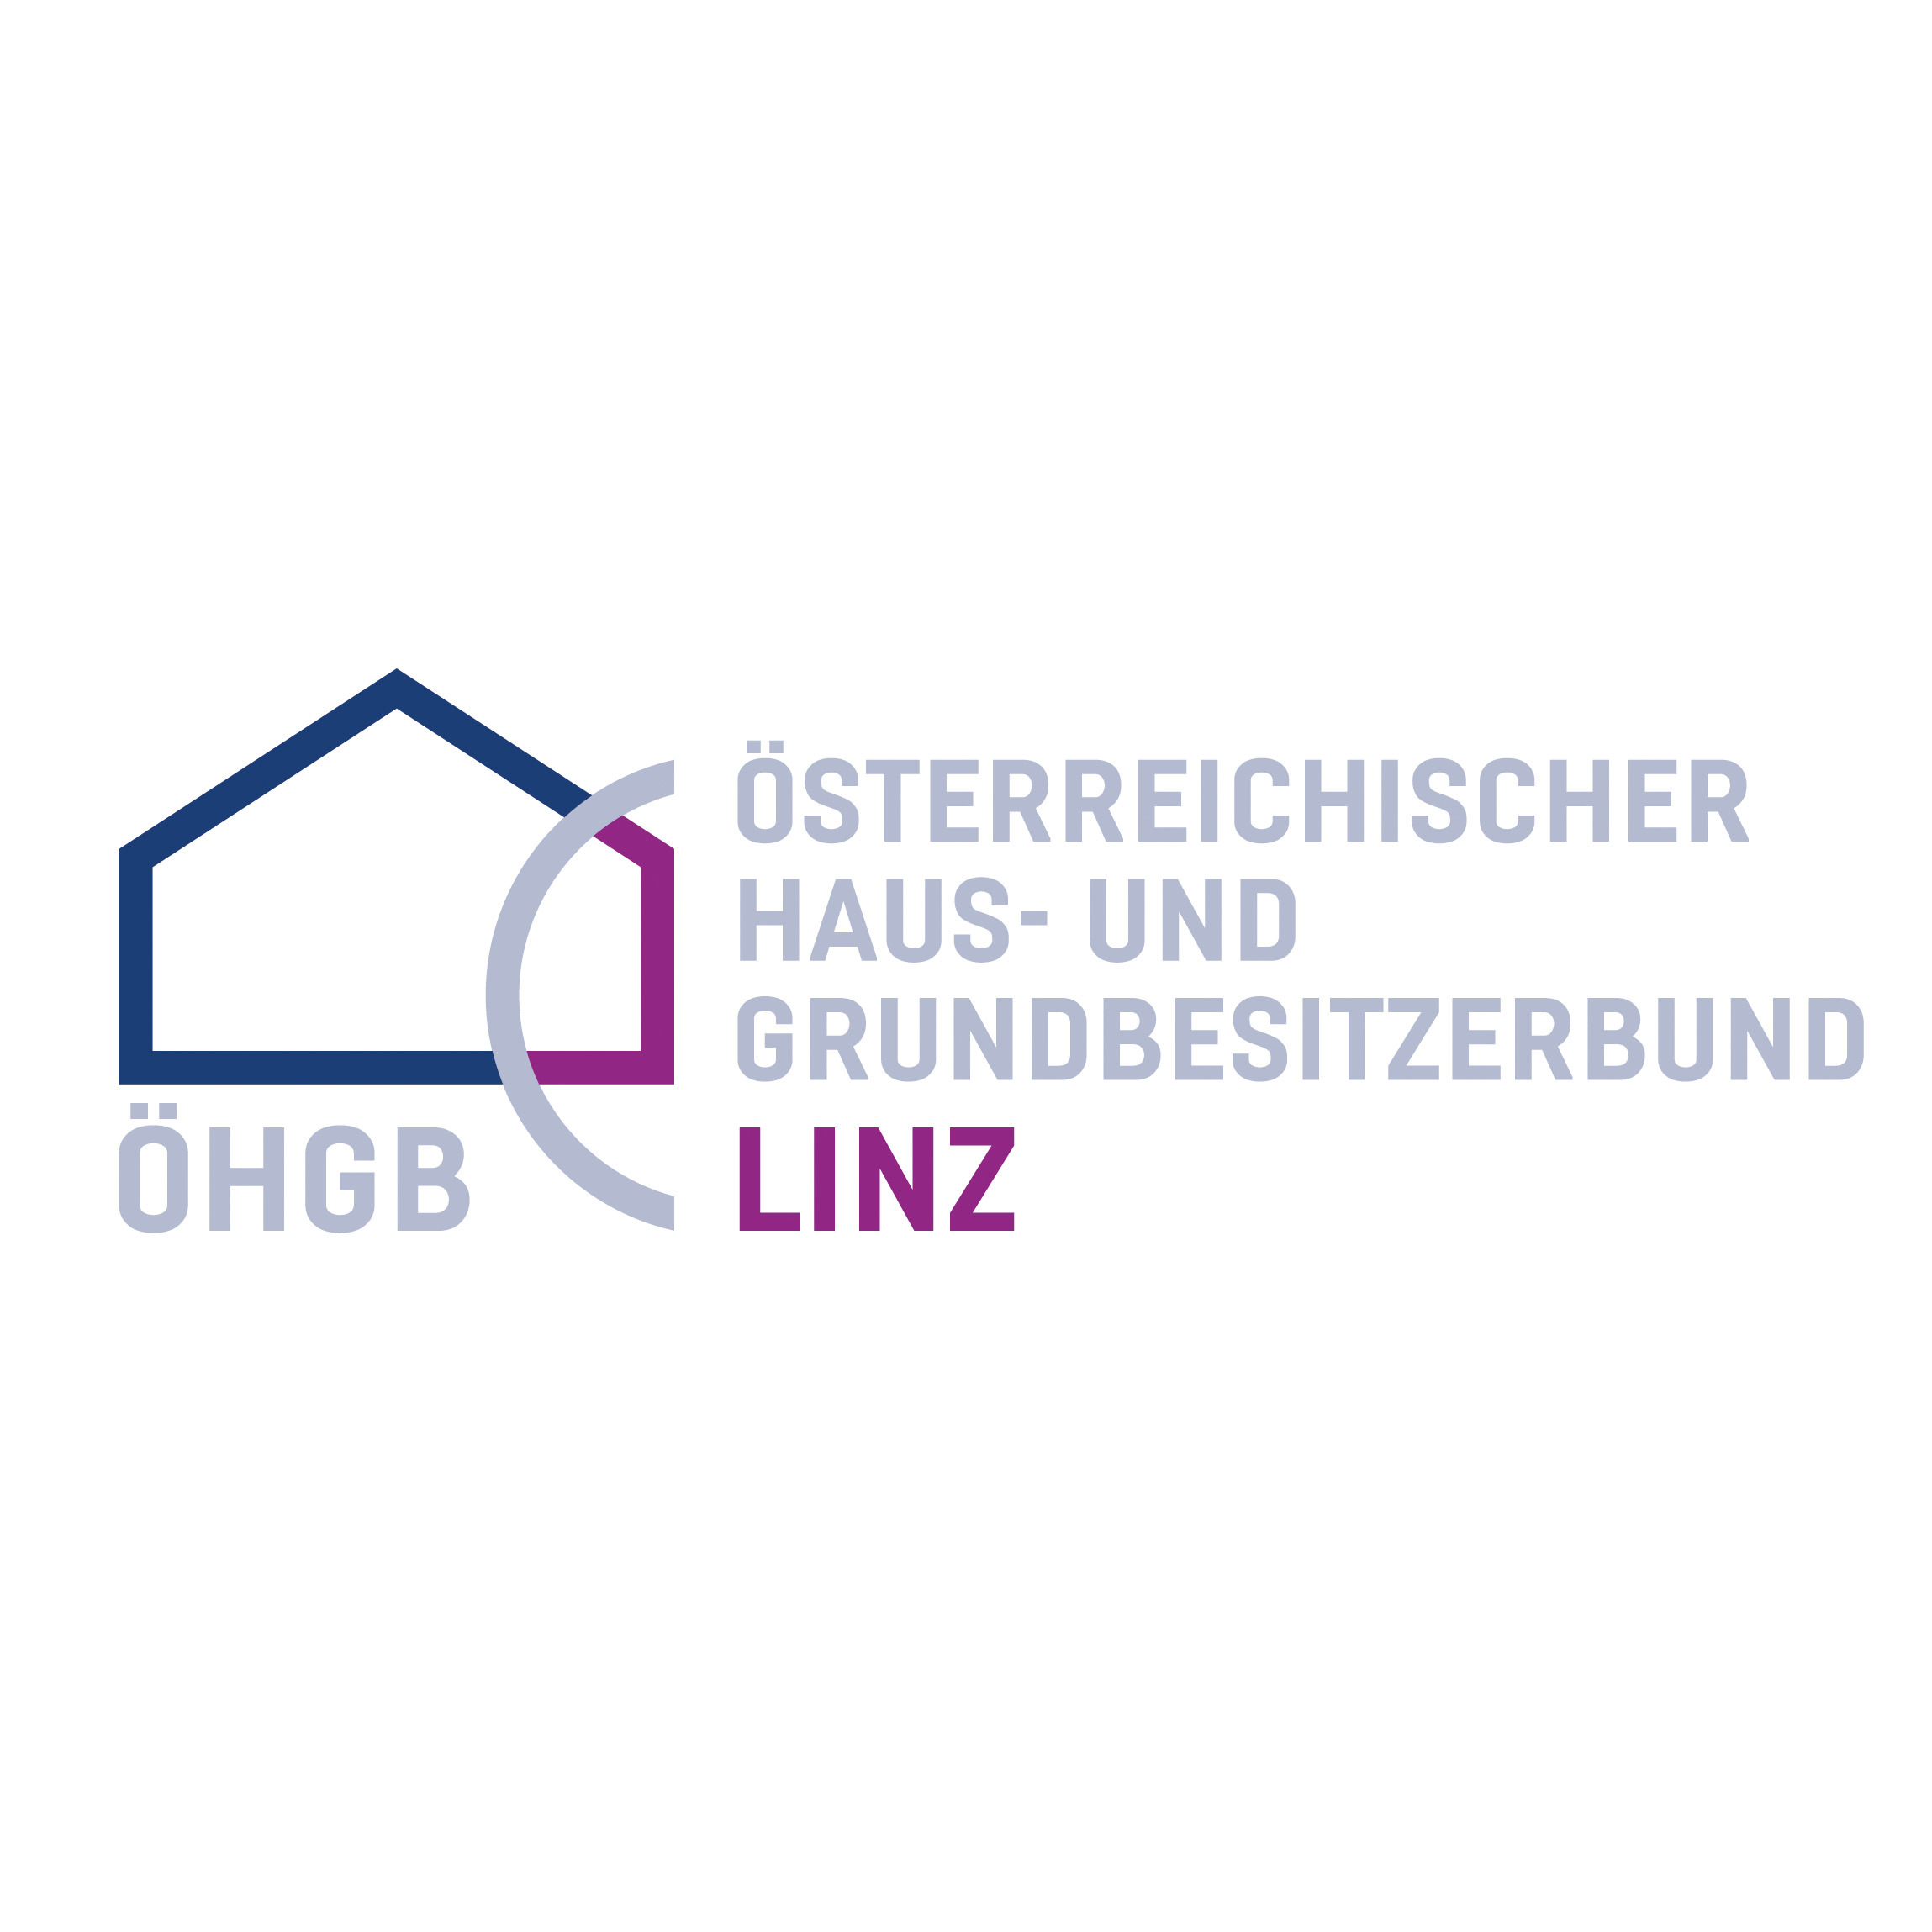 ÖHGB Linz - Österreichischer Haus- und Grundbesitzerbund Linz Logo